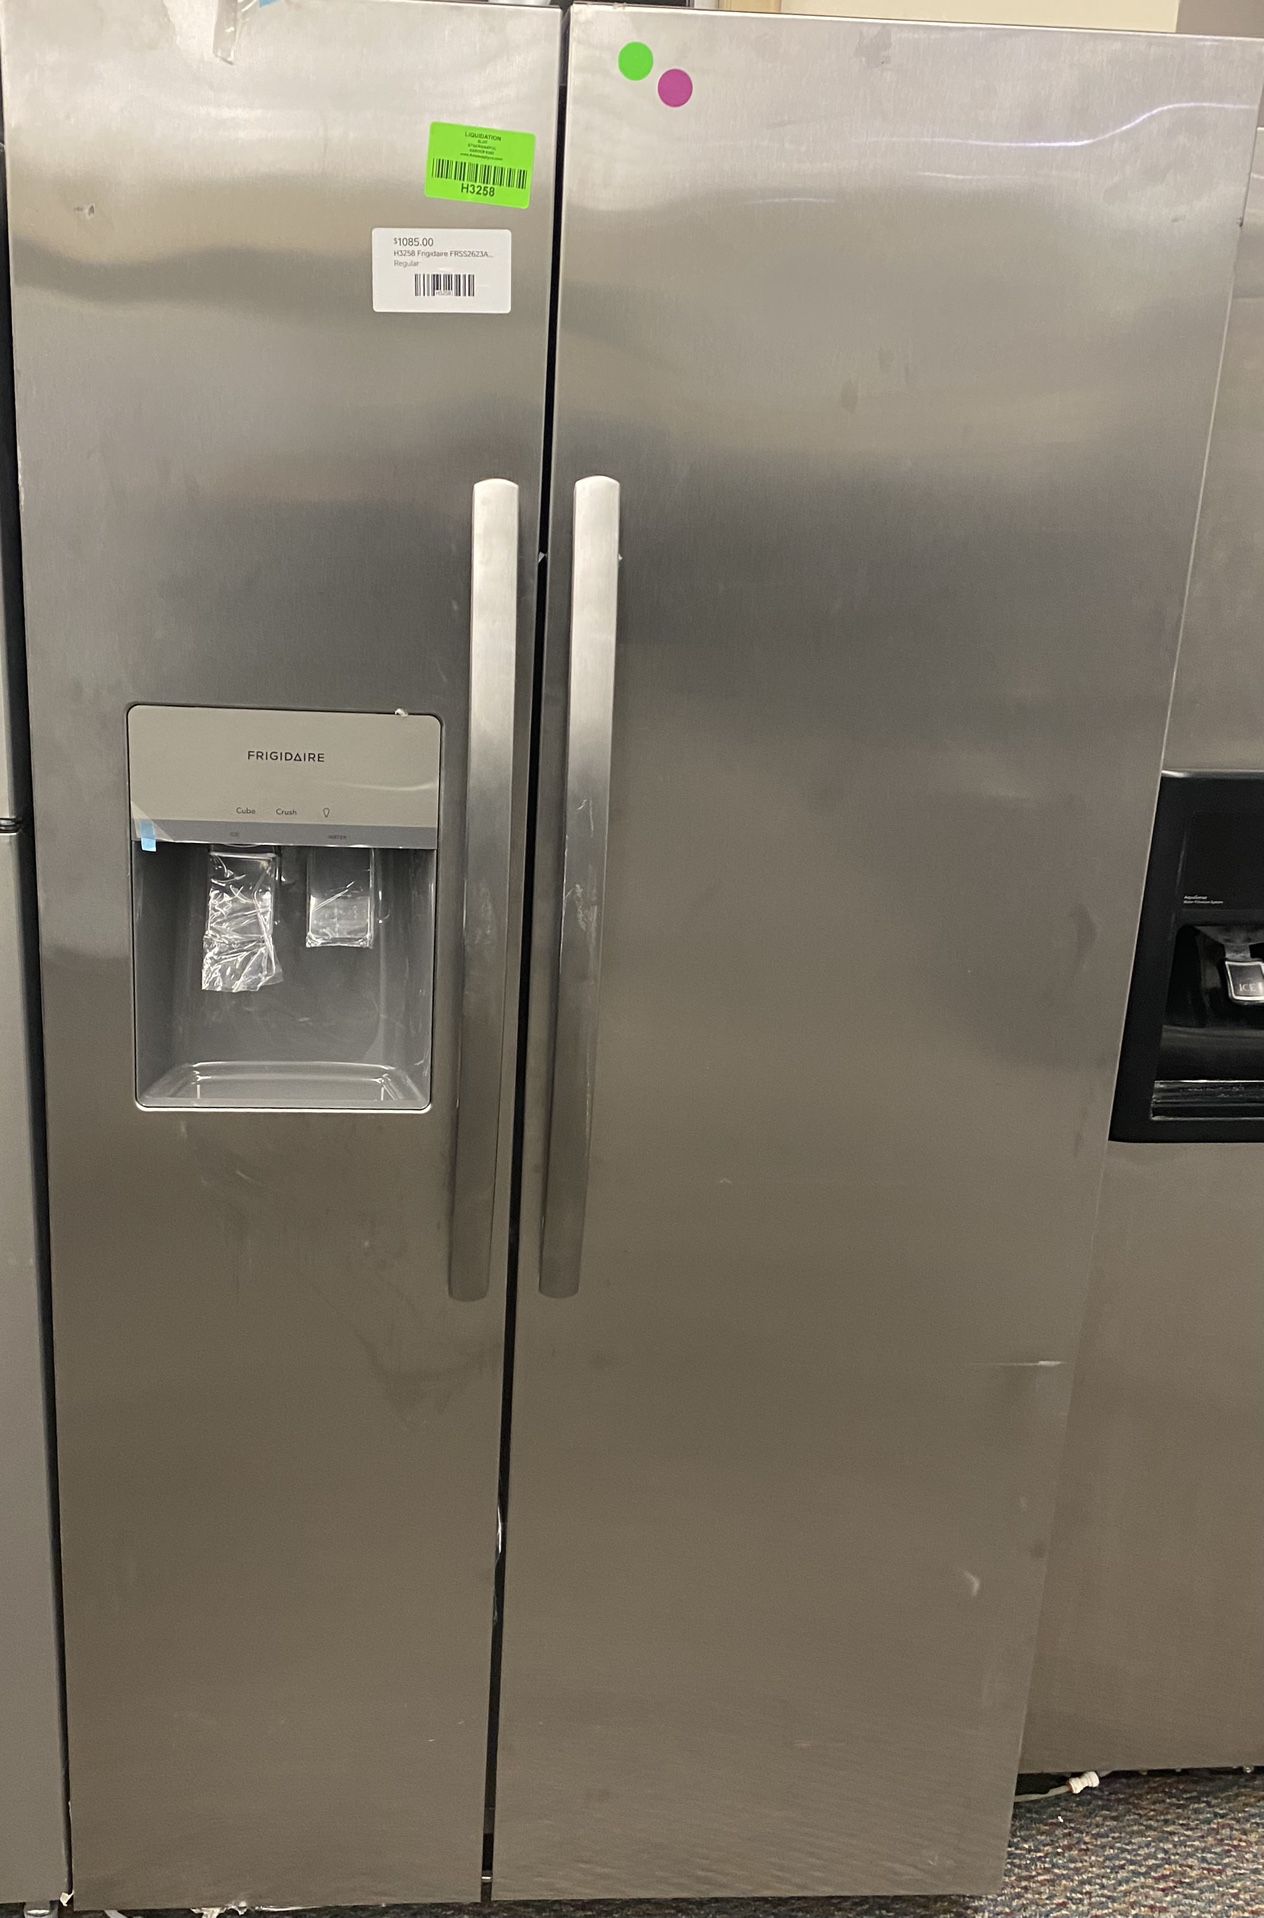 Frigidaire Freezer/Refrigerator 